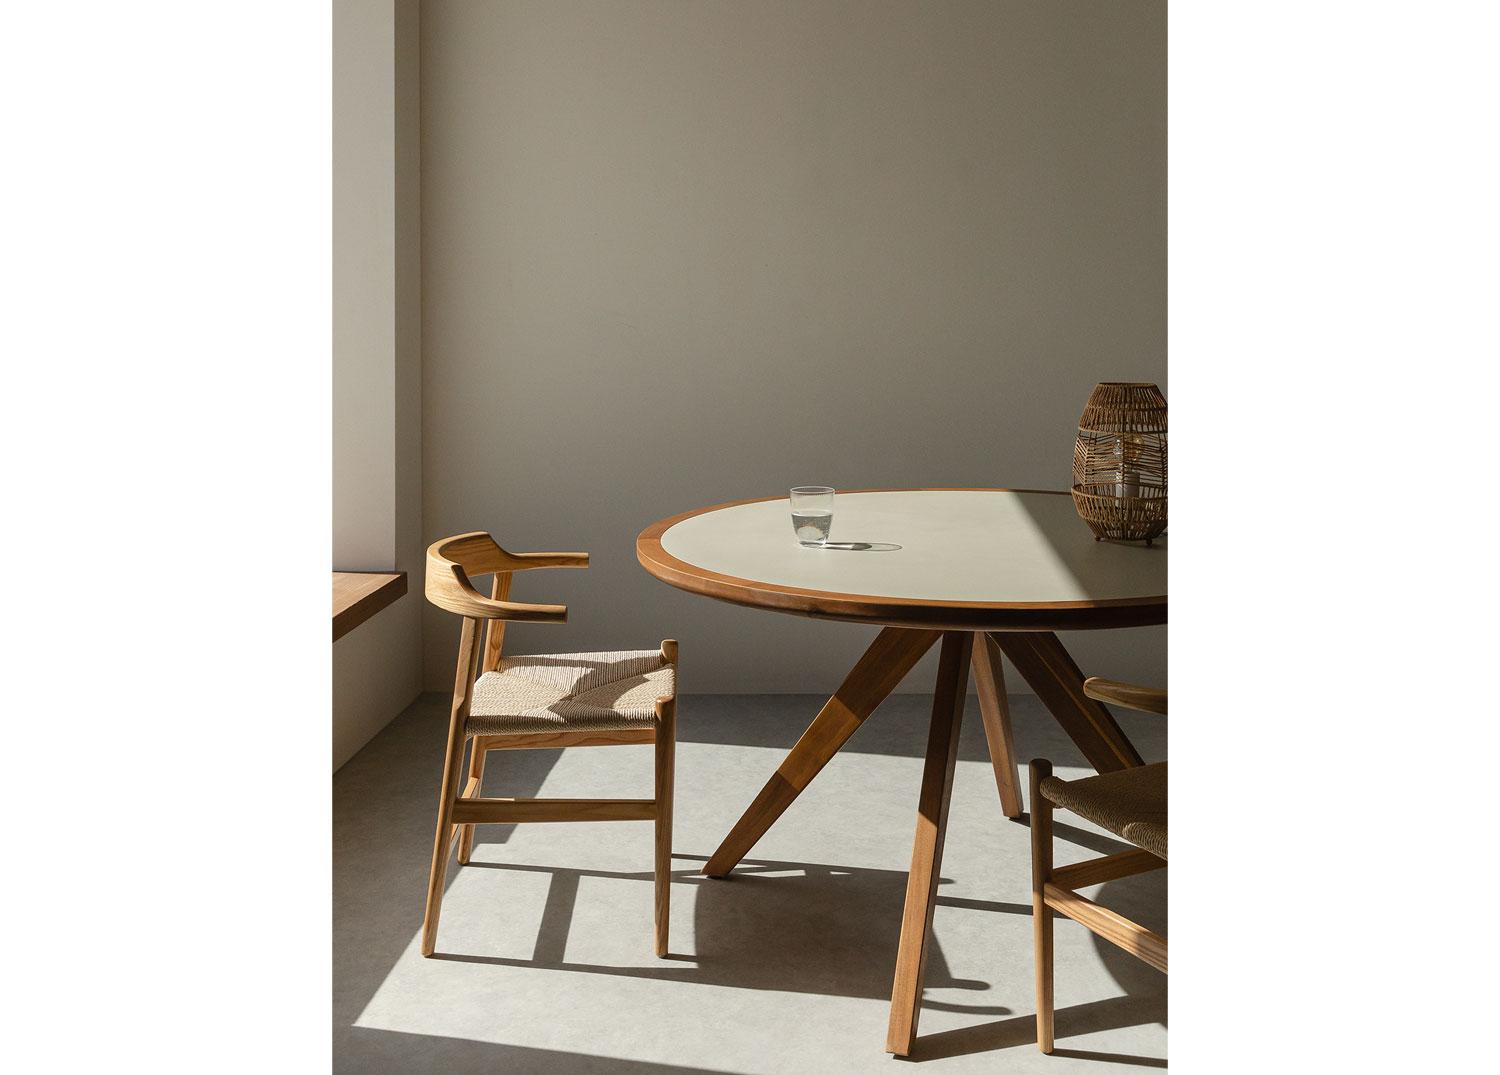 ETHNICRAFT tavolo rettangolare BOK (140 x 80 x 76 cm - Rovere